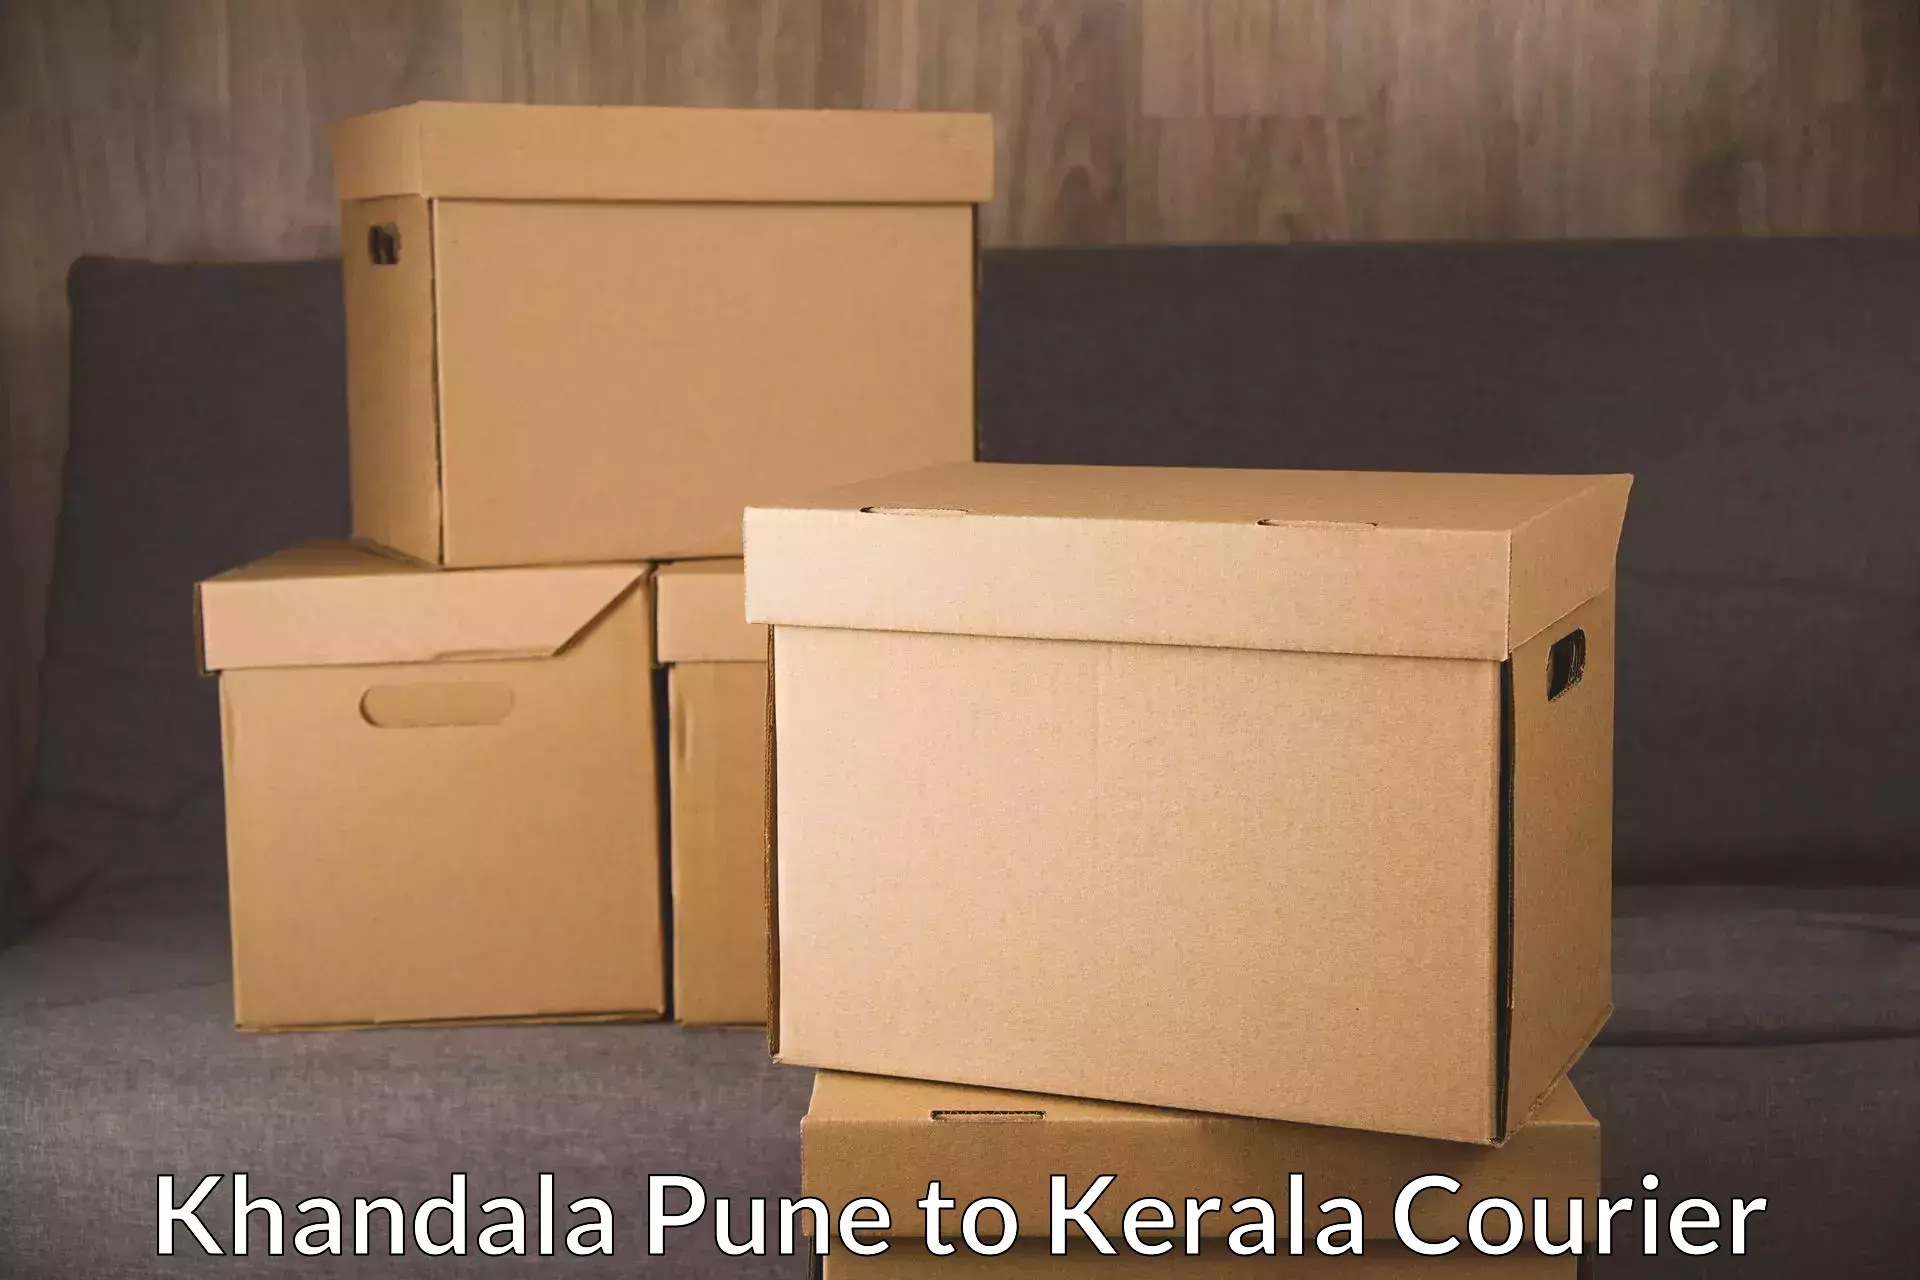 Sustainable shipping practices Khandala Pune to Kerala